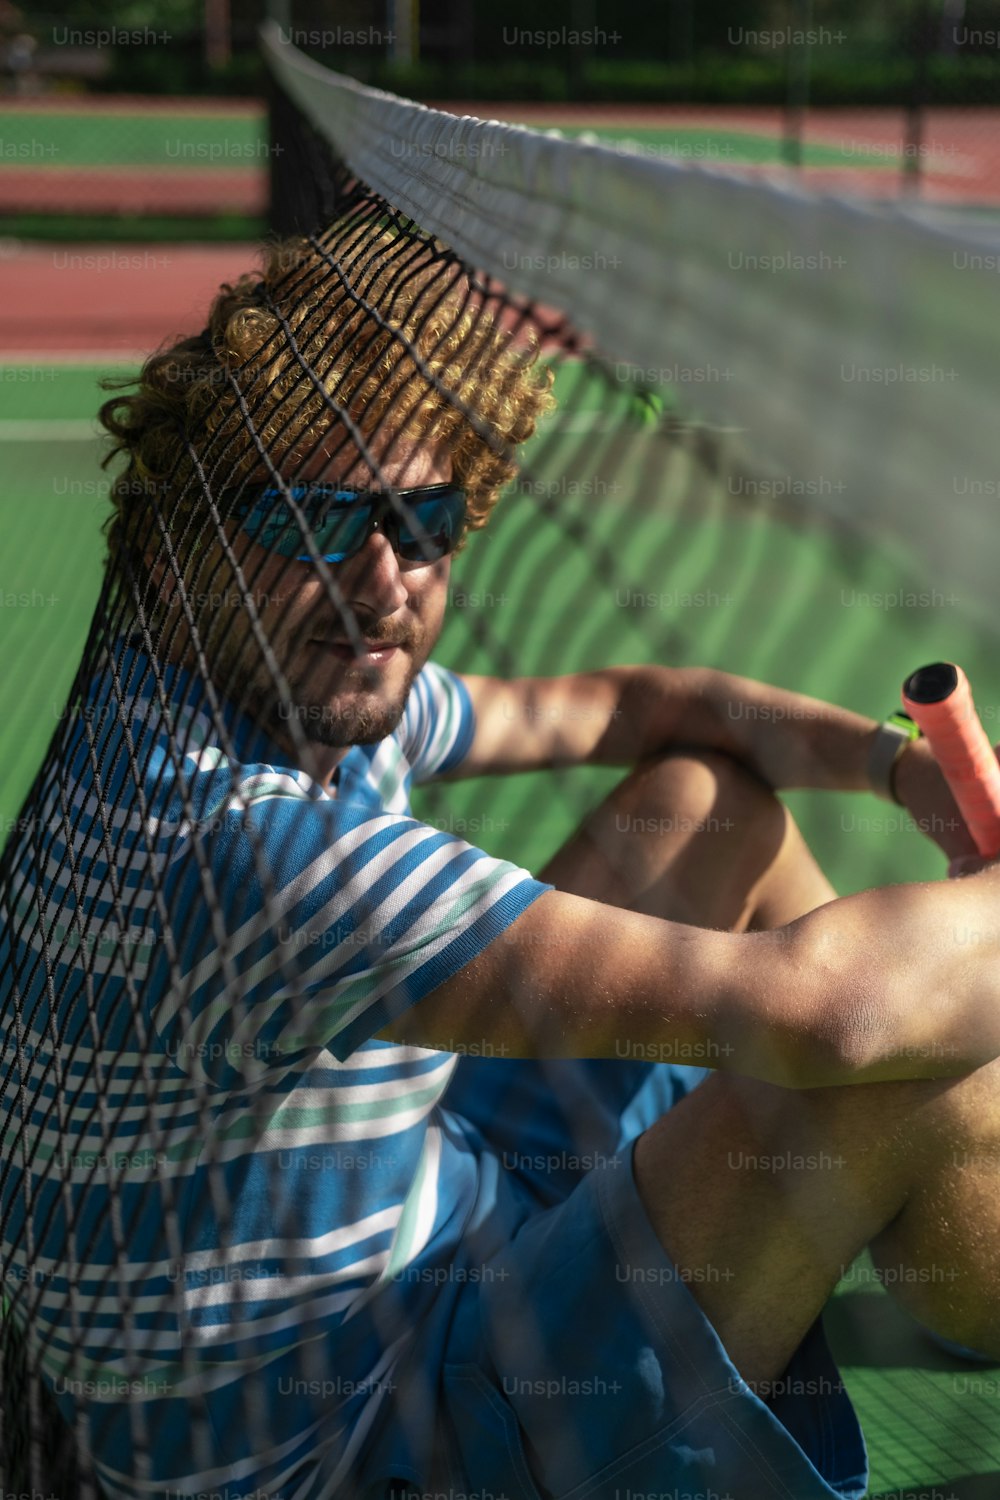 a man sitting on a tennis court holding a racquet